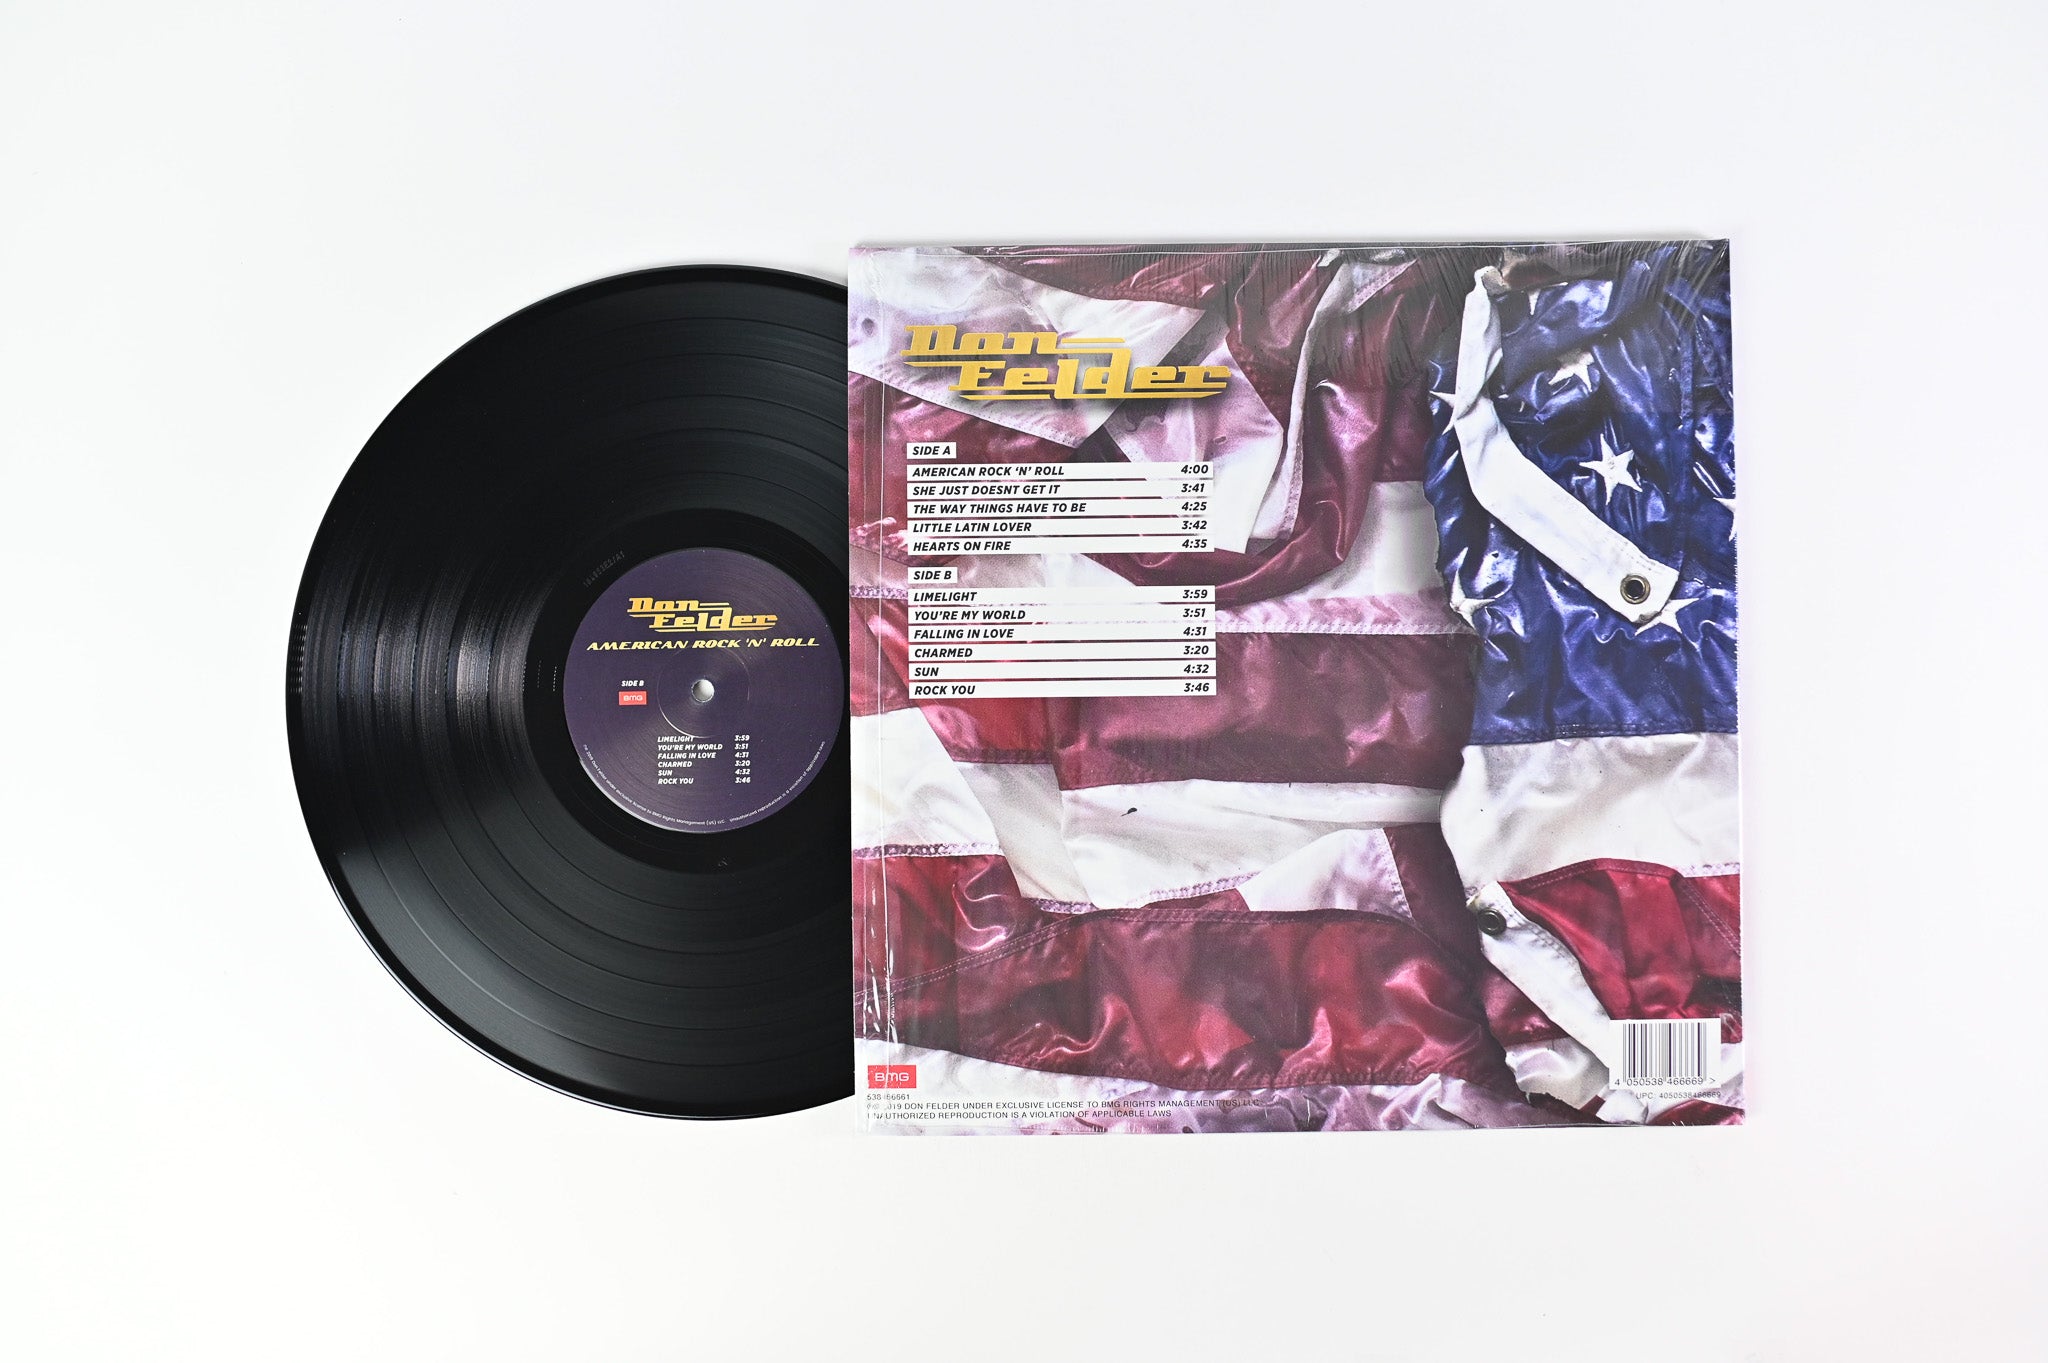 Don Felder - American Rock 'N' Roll on BMG